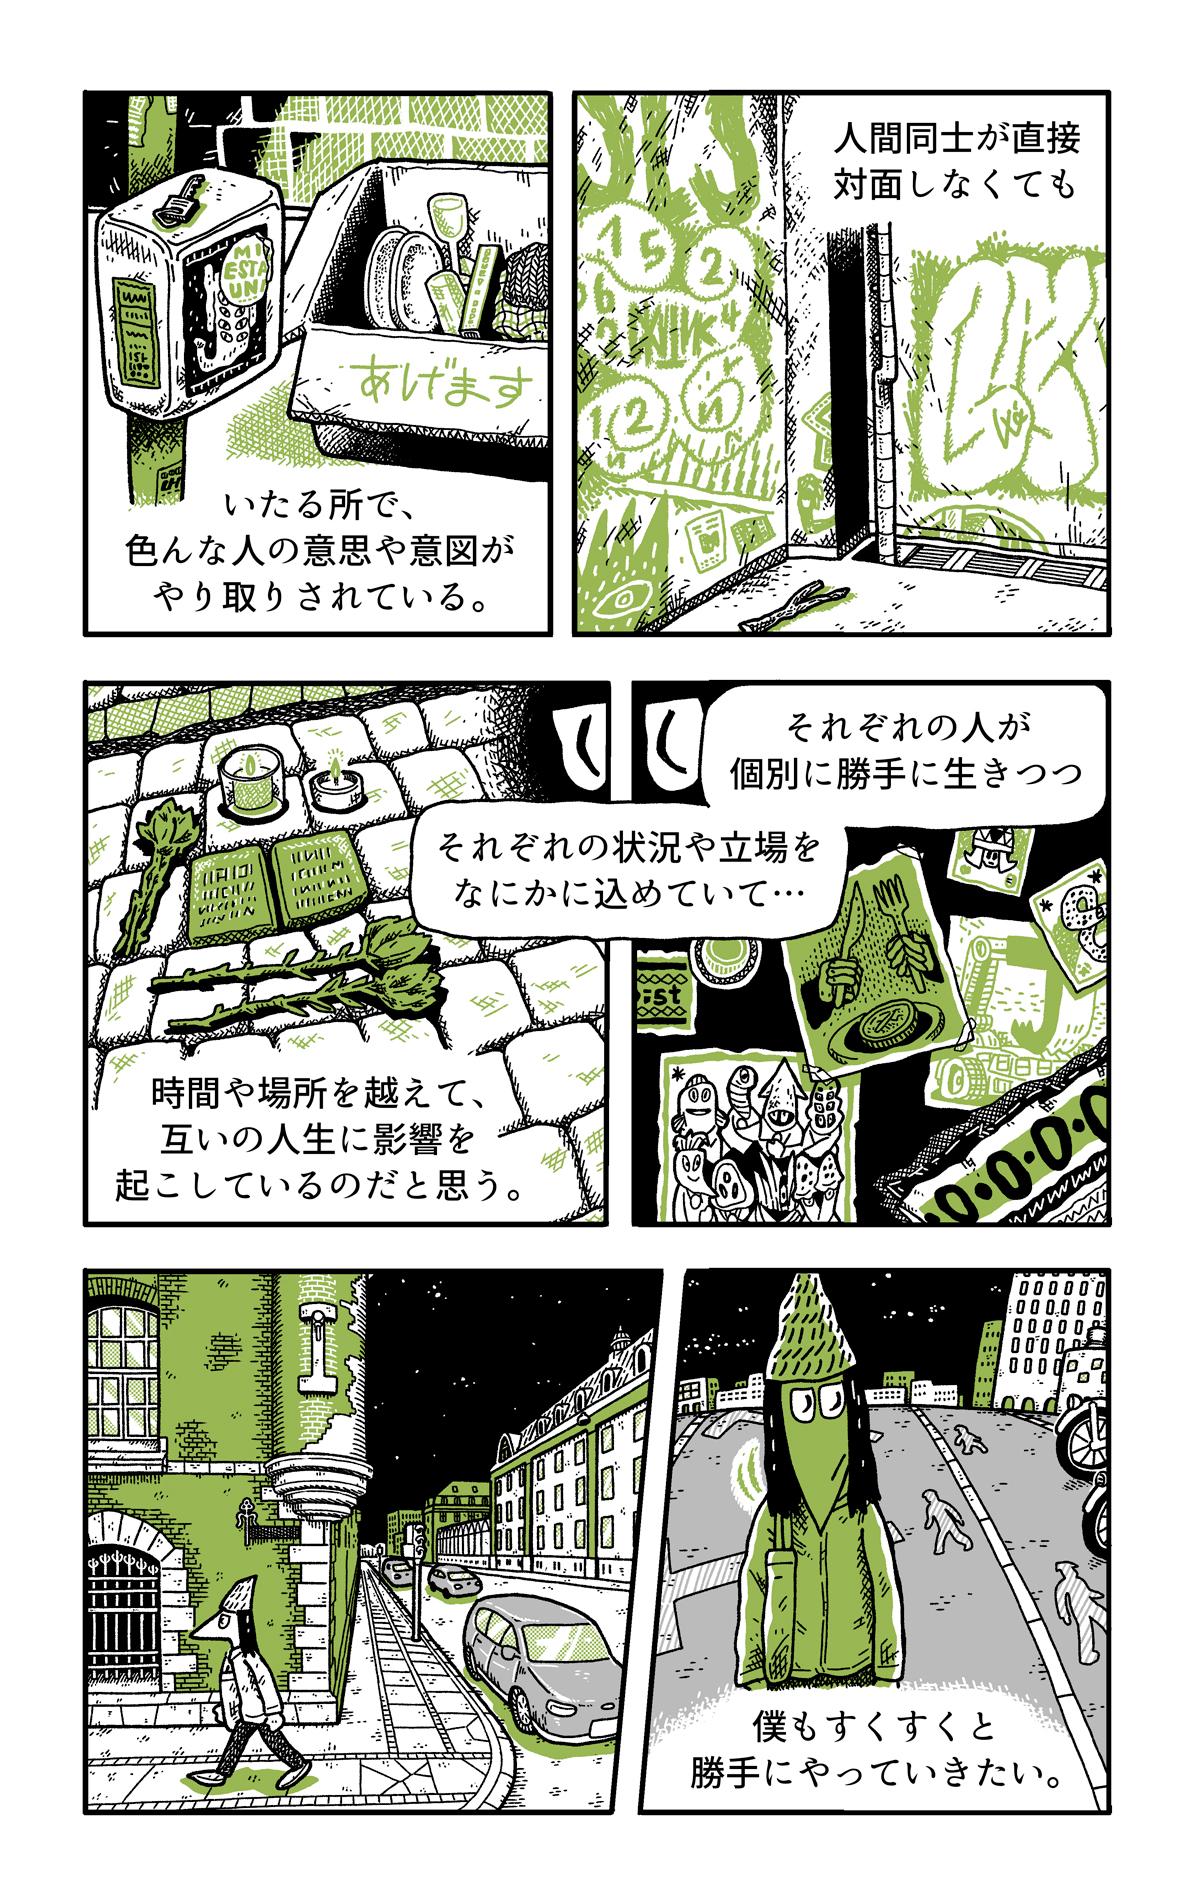 香山哲さんインタビュー「生活を大切にする漫画を描く」（後編） みんなのミシマガジン